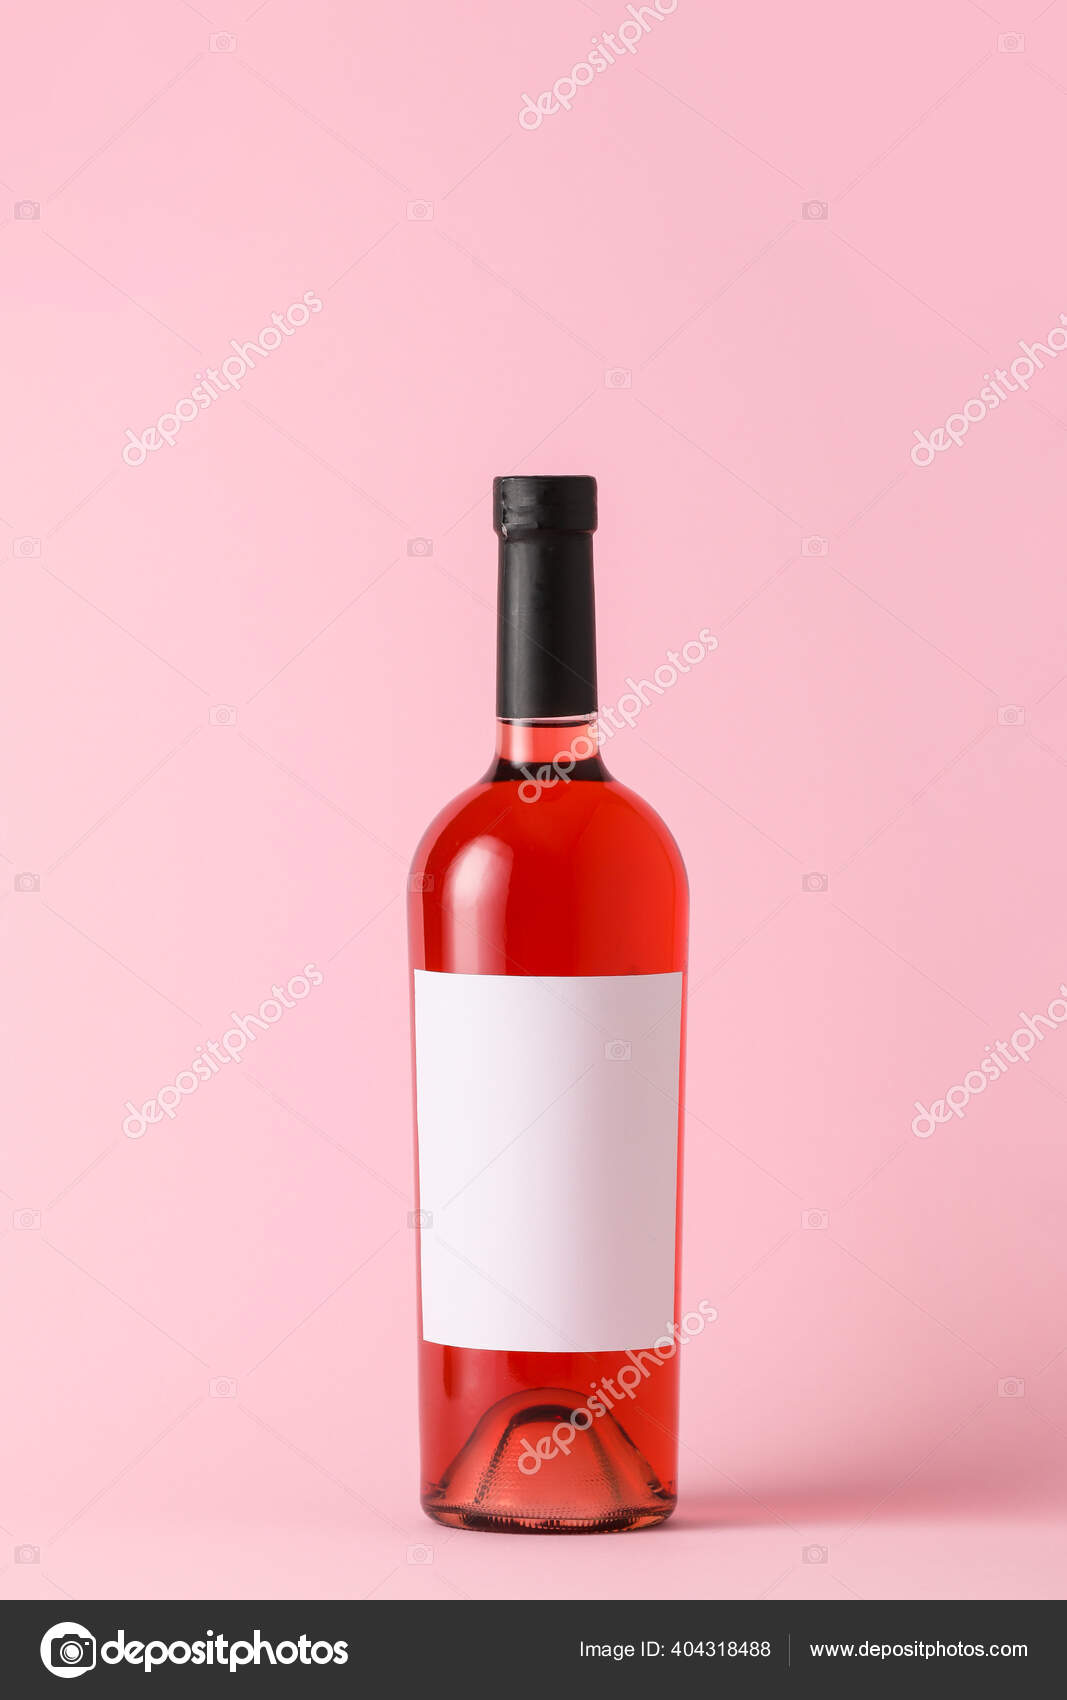 Bouteille De Vin Rouge Avec Une étiquette Vierge Pour La Marque